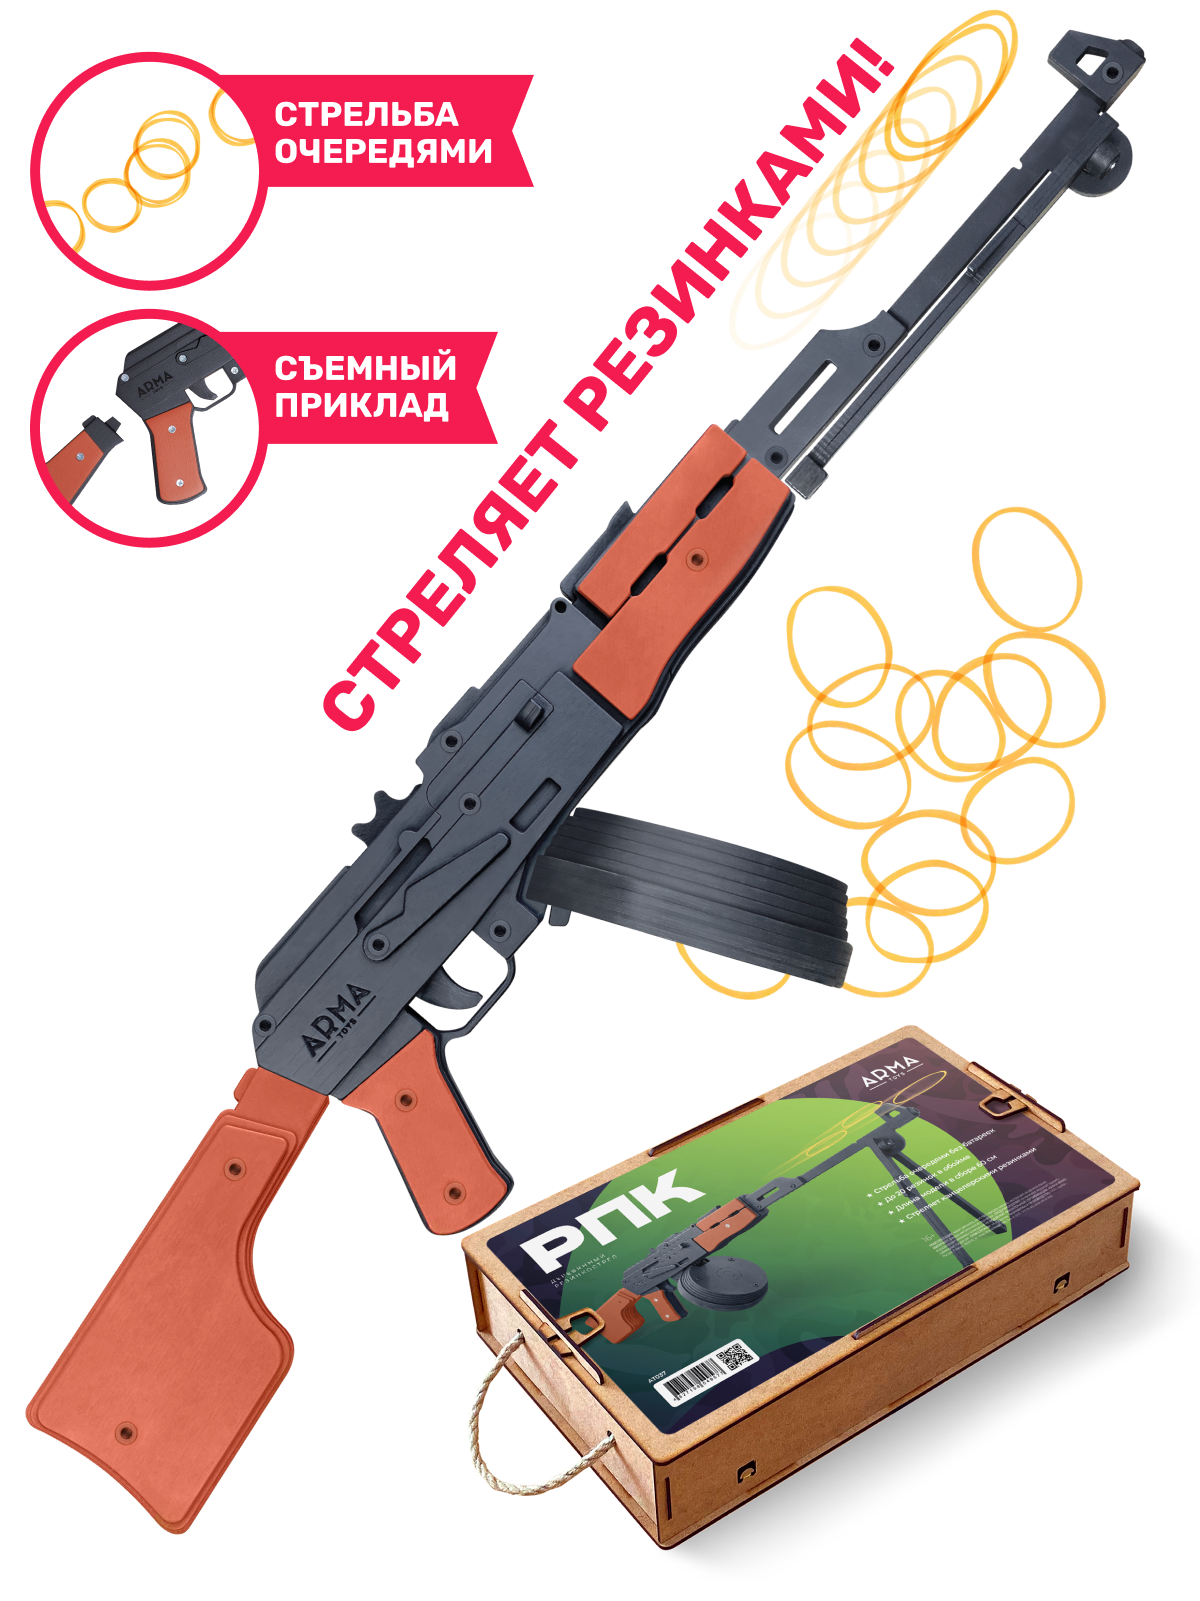 Резинкострел Arma.toys РПК - фото 1